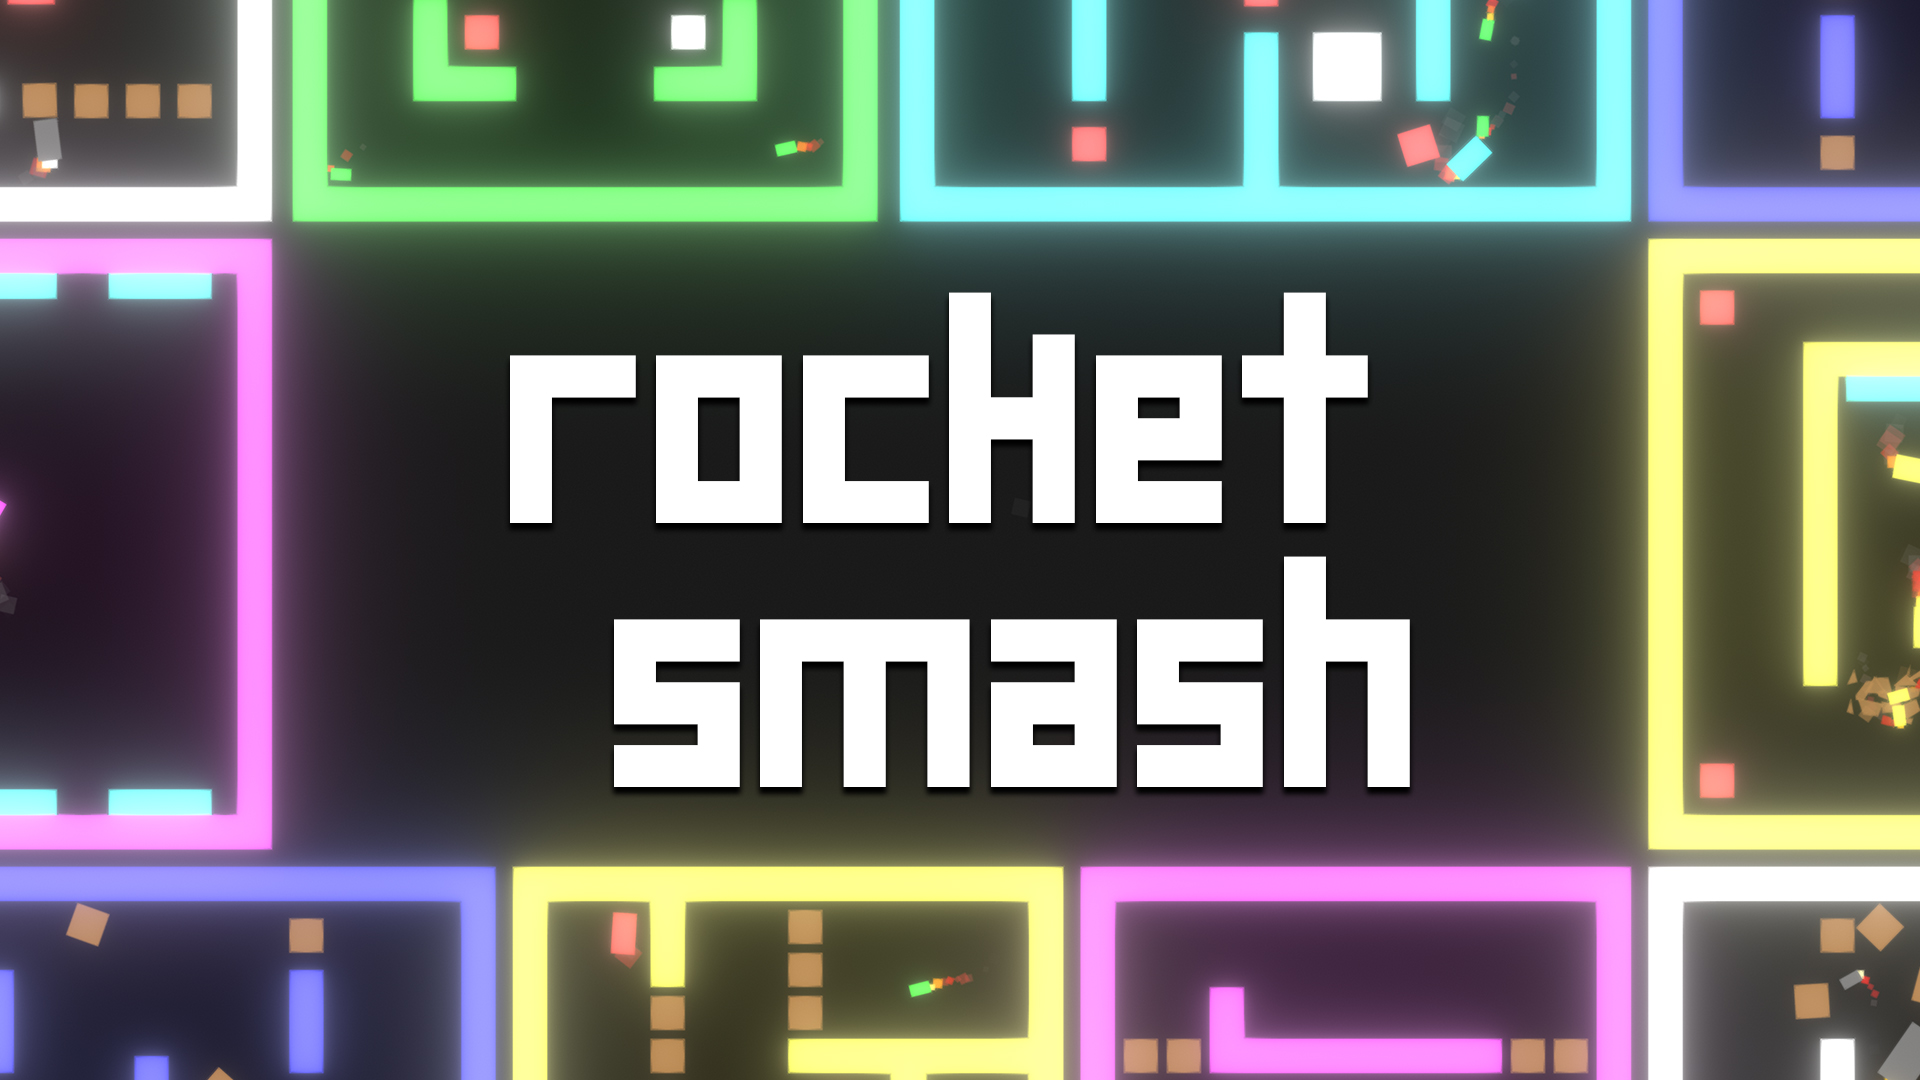 Rocket Smash